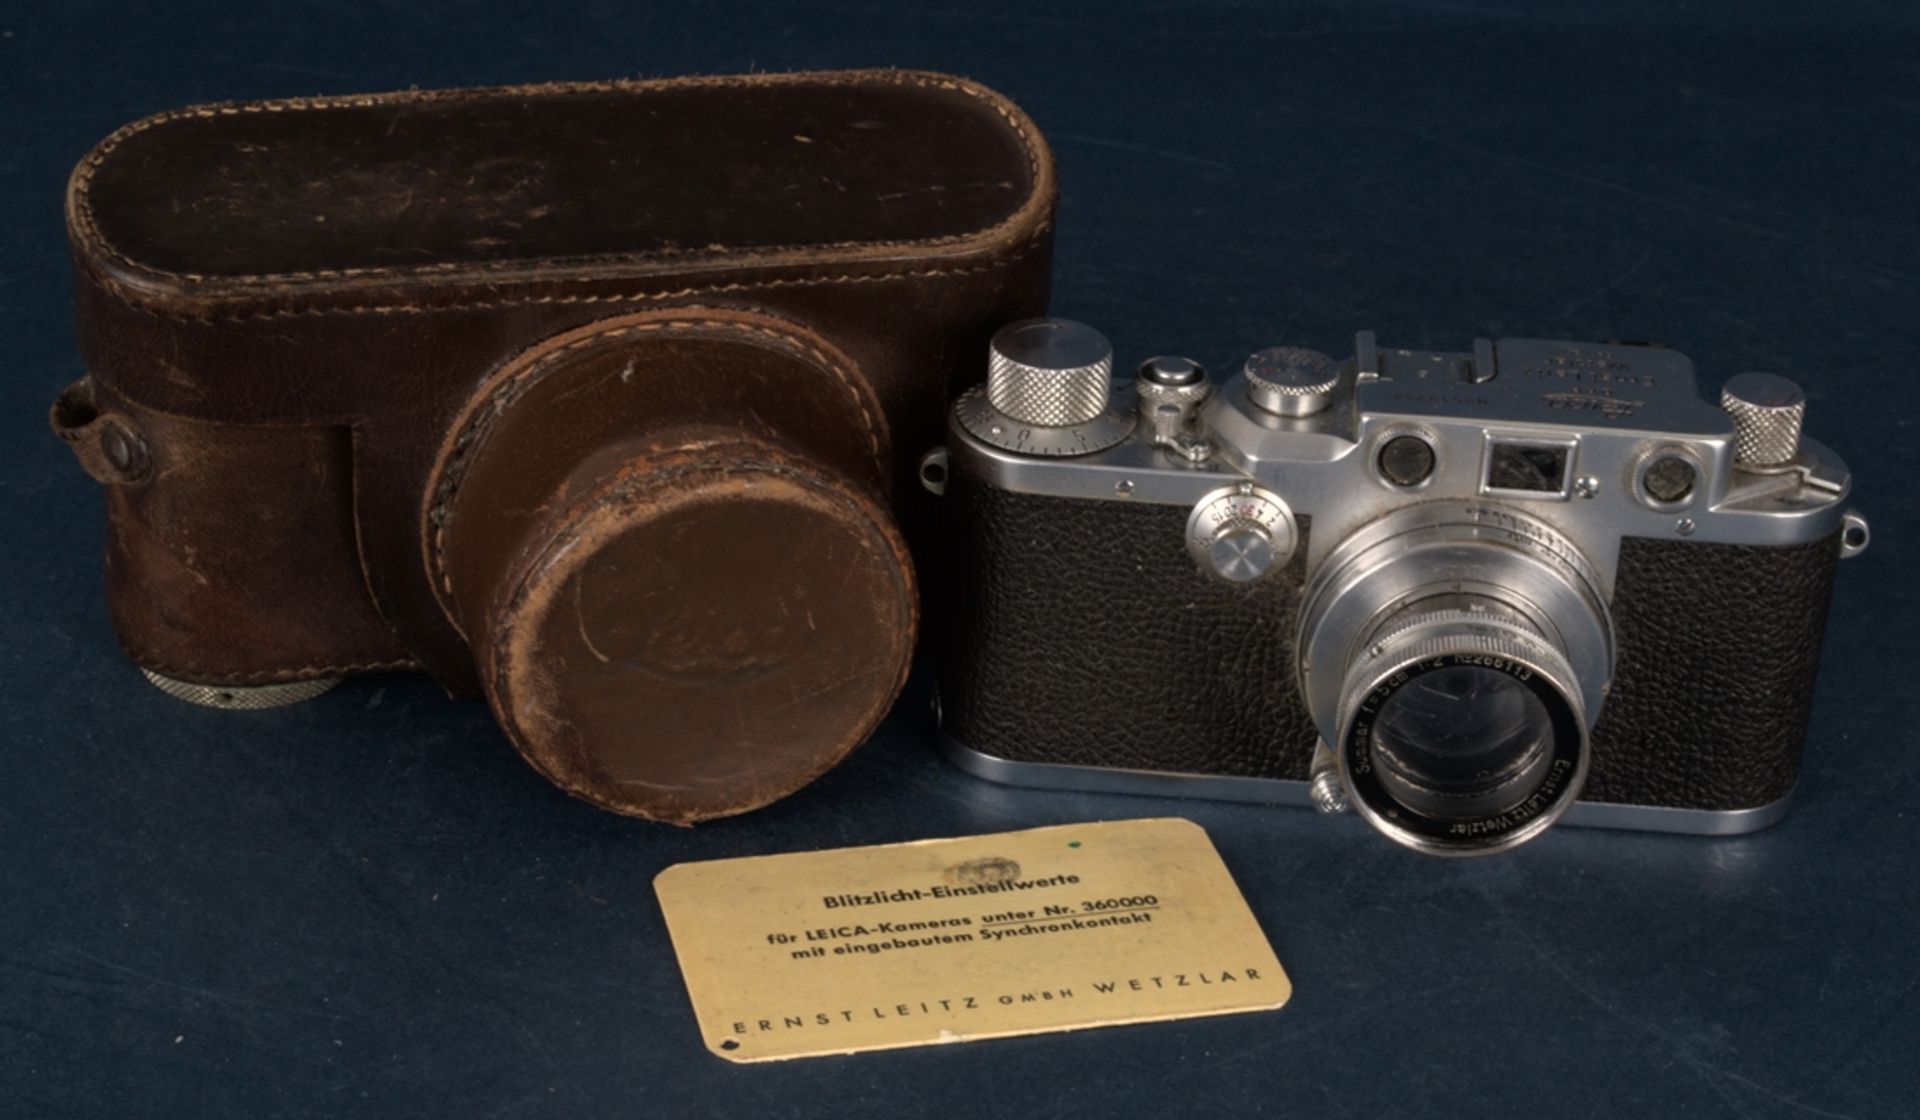 LEICA III C Photoapparat/ Photokamera mit Summar 1= 5 cm - 1:2 Objektiv von Ernst Leitz Wetzlar, No.